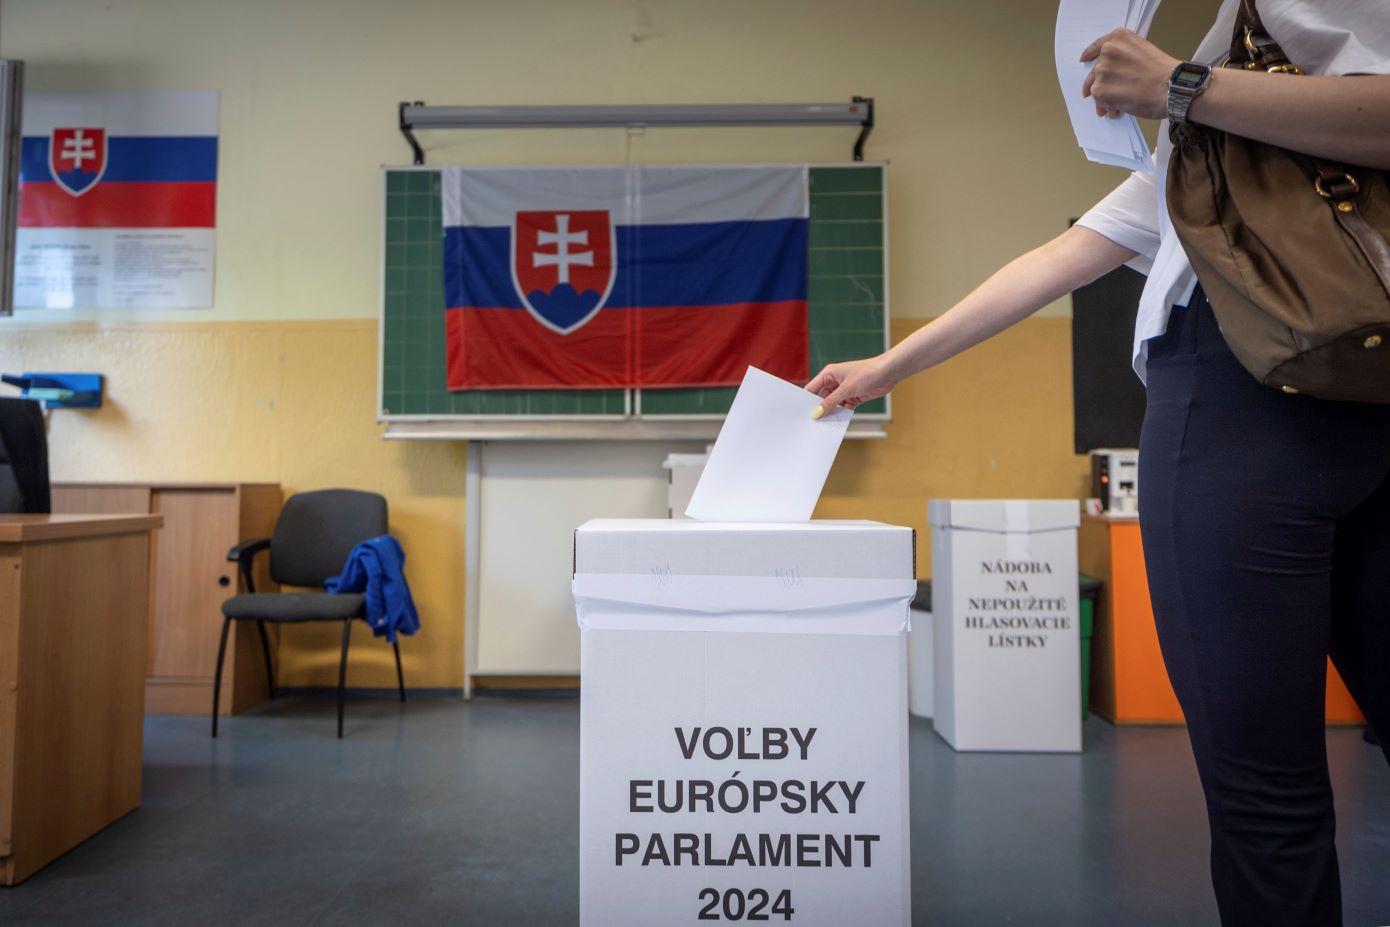 Το αντιπολιτευόμενο φιλελεύθερο κόμμα, νικητής των εκλογών στη Σλοβακία